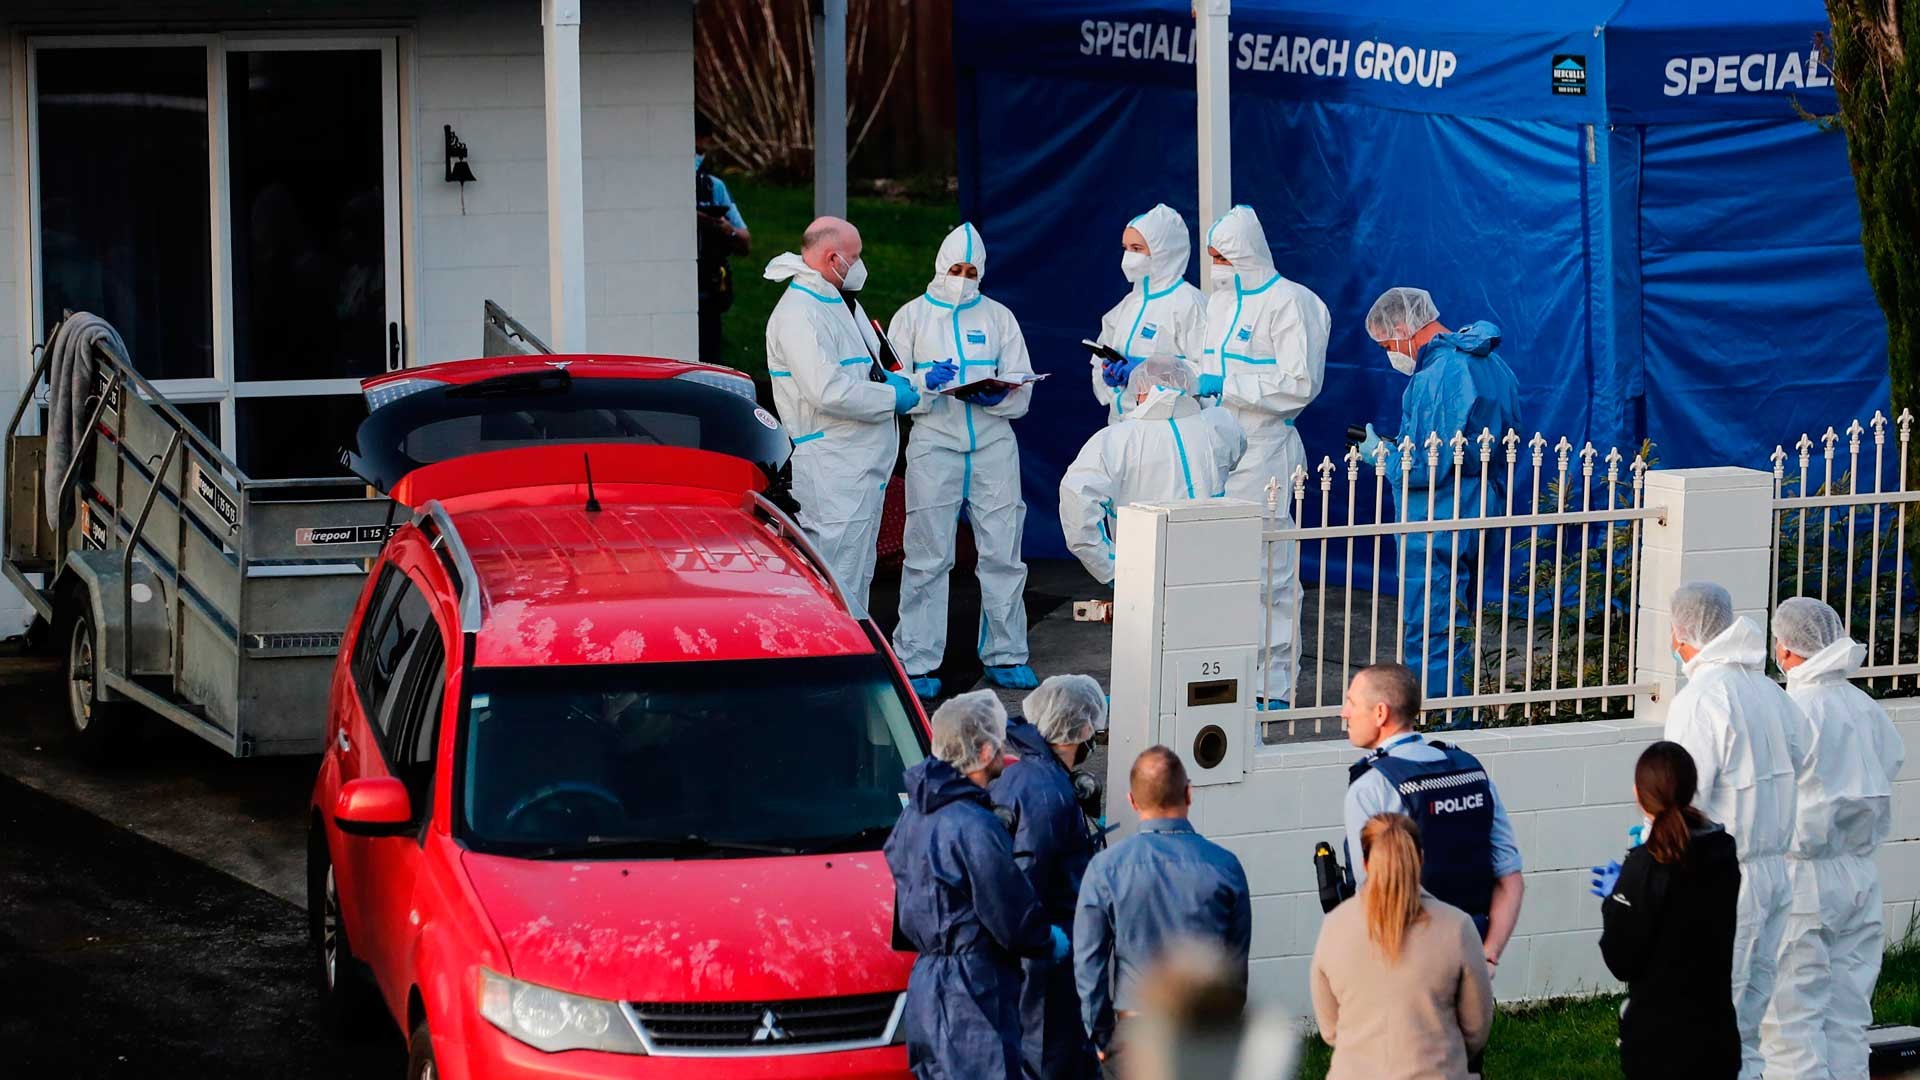 Restos humanos encontrados em malas compradas em leilão na Nova Zelândia são de duas crianças, diz polícia